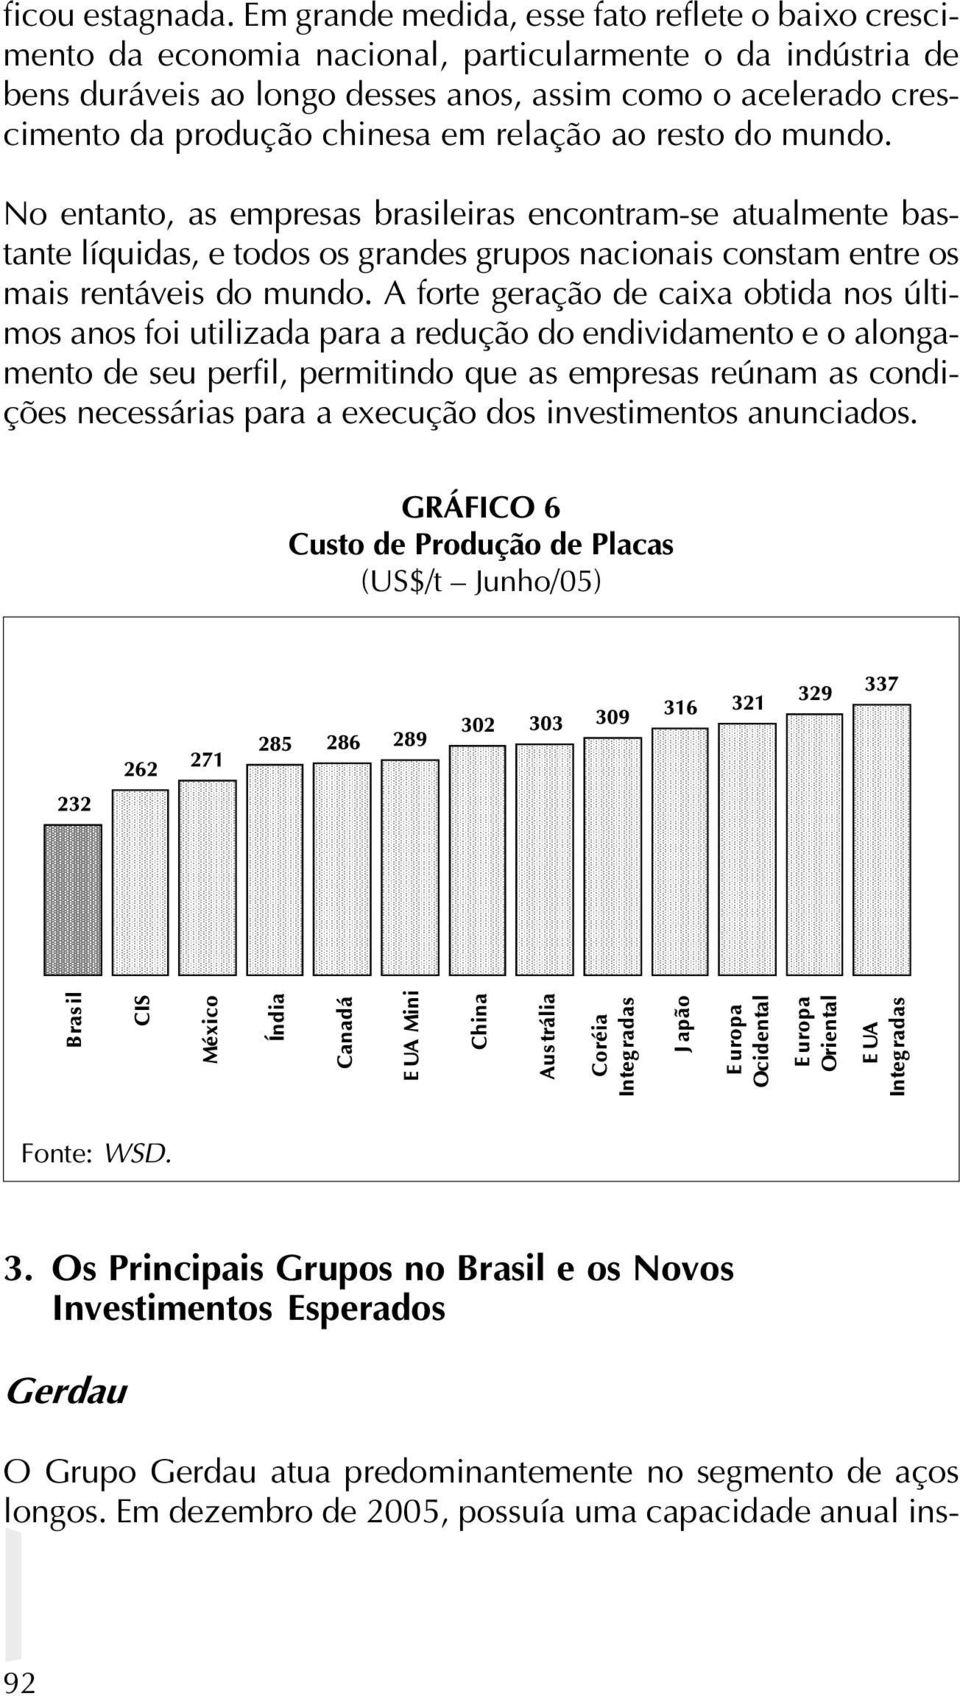 chinesa em relação ao resto do mundo. No entanto, as empresas brasileiras encontram-se atualmente bastante líquidas, e todos os grandes grupos nacionais constam entre os mais rentáveis do mundo.